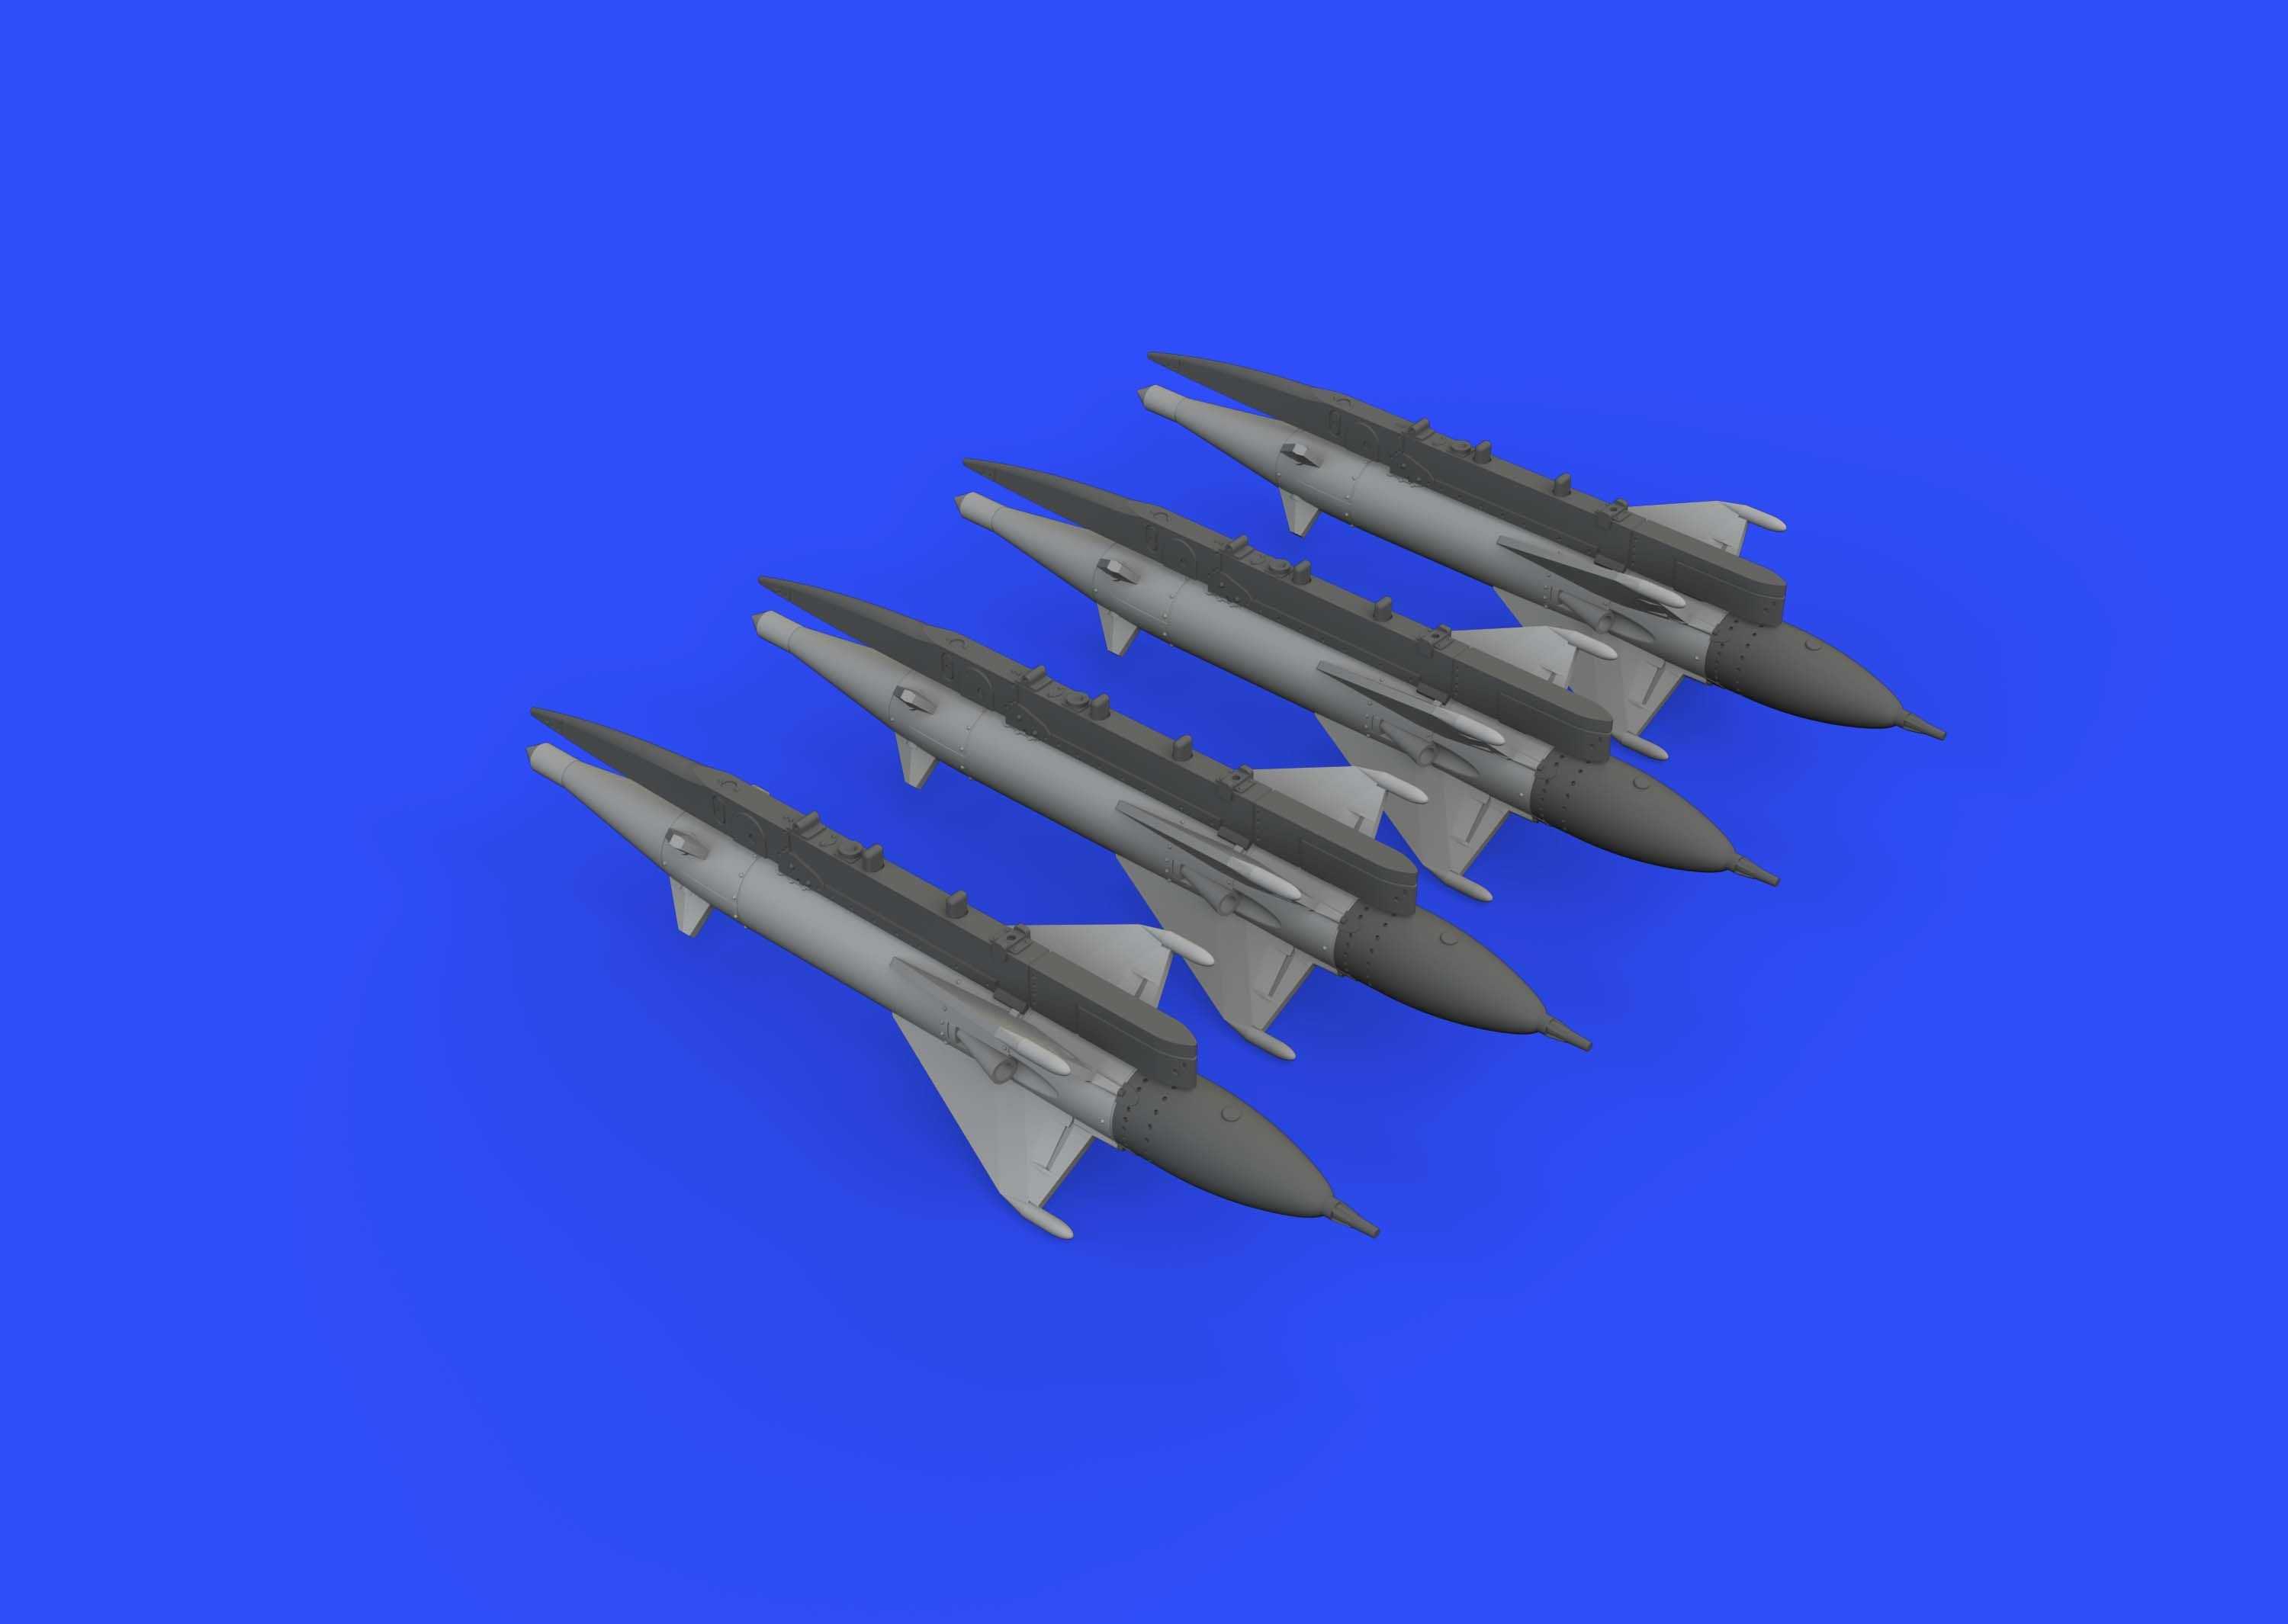 Accessoires - Missiles RS-2US pour Mikoyan MiG-21 (conçus pour être ut